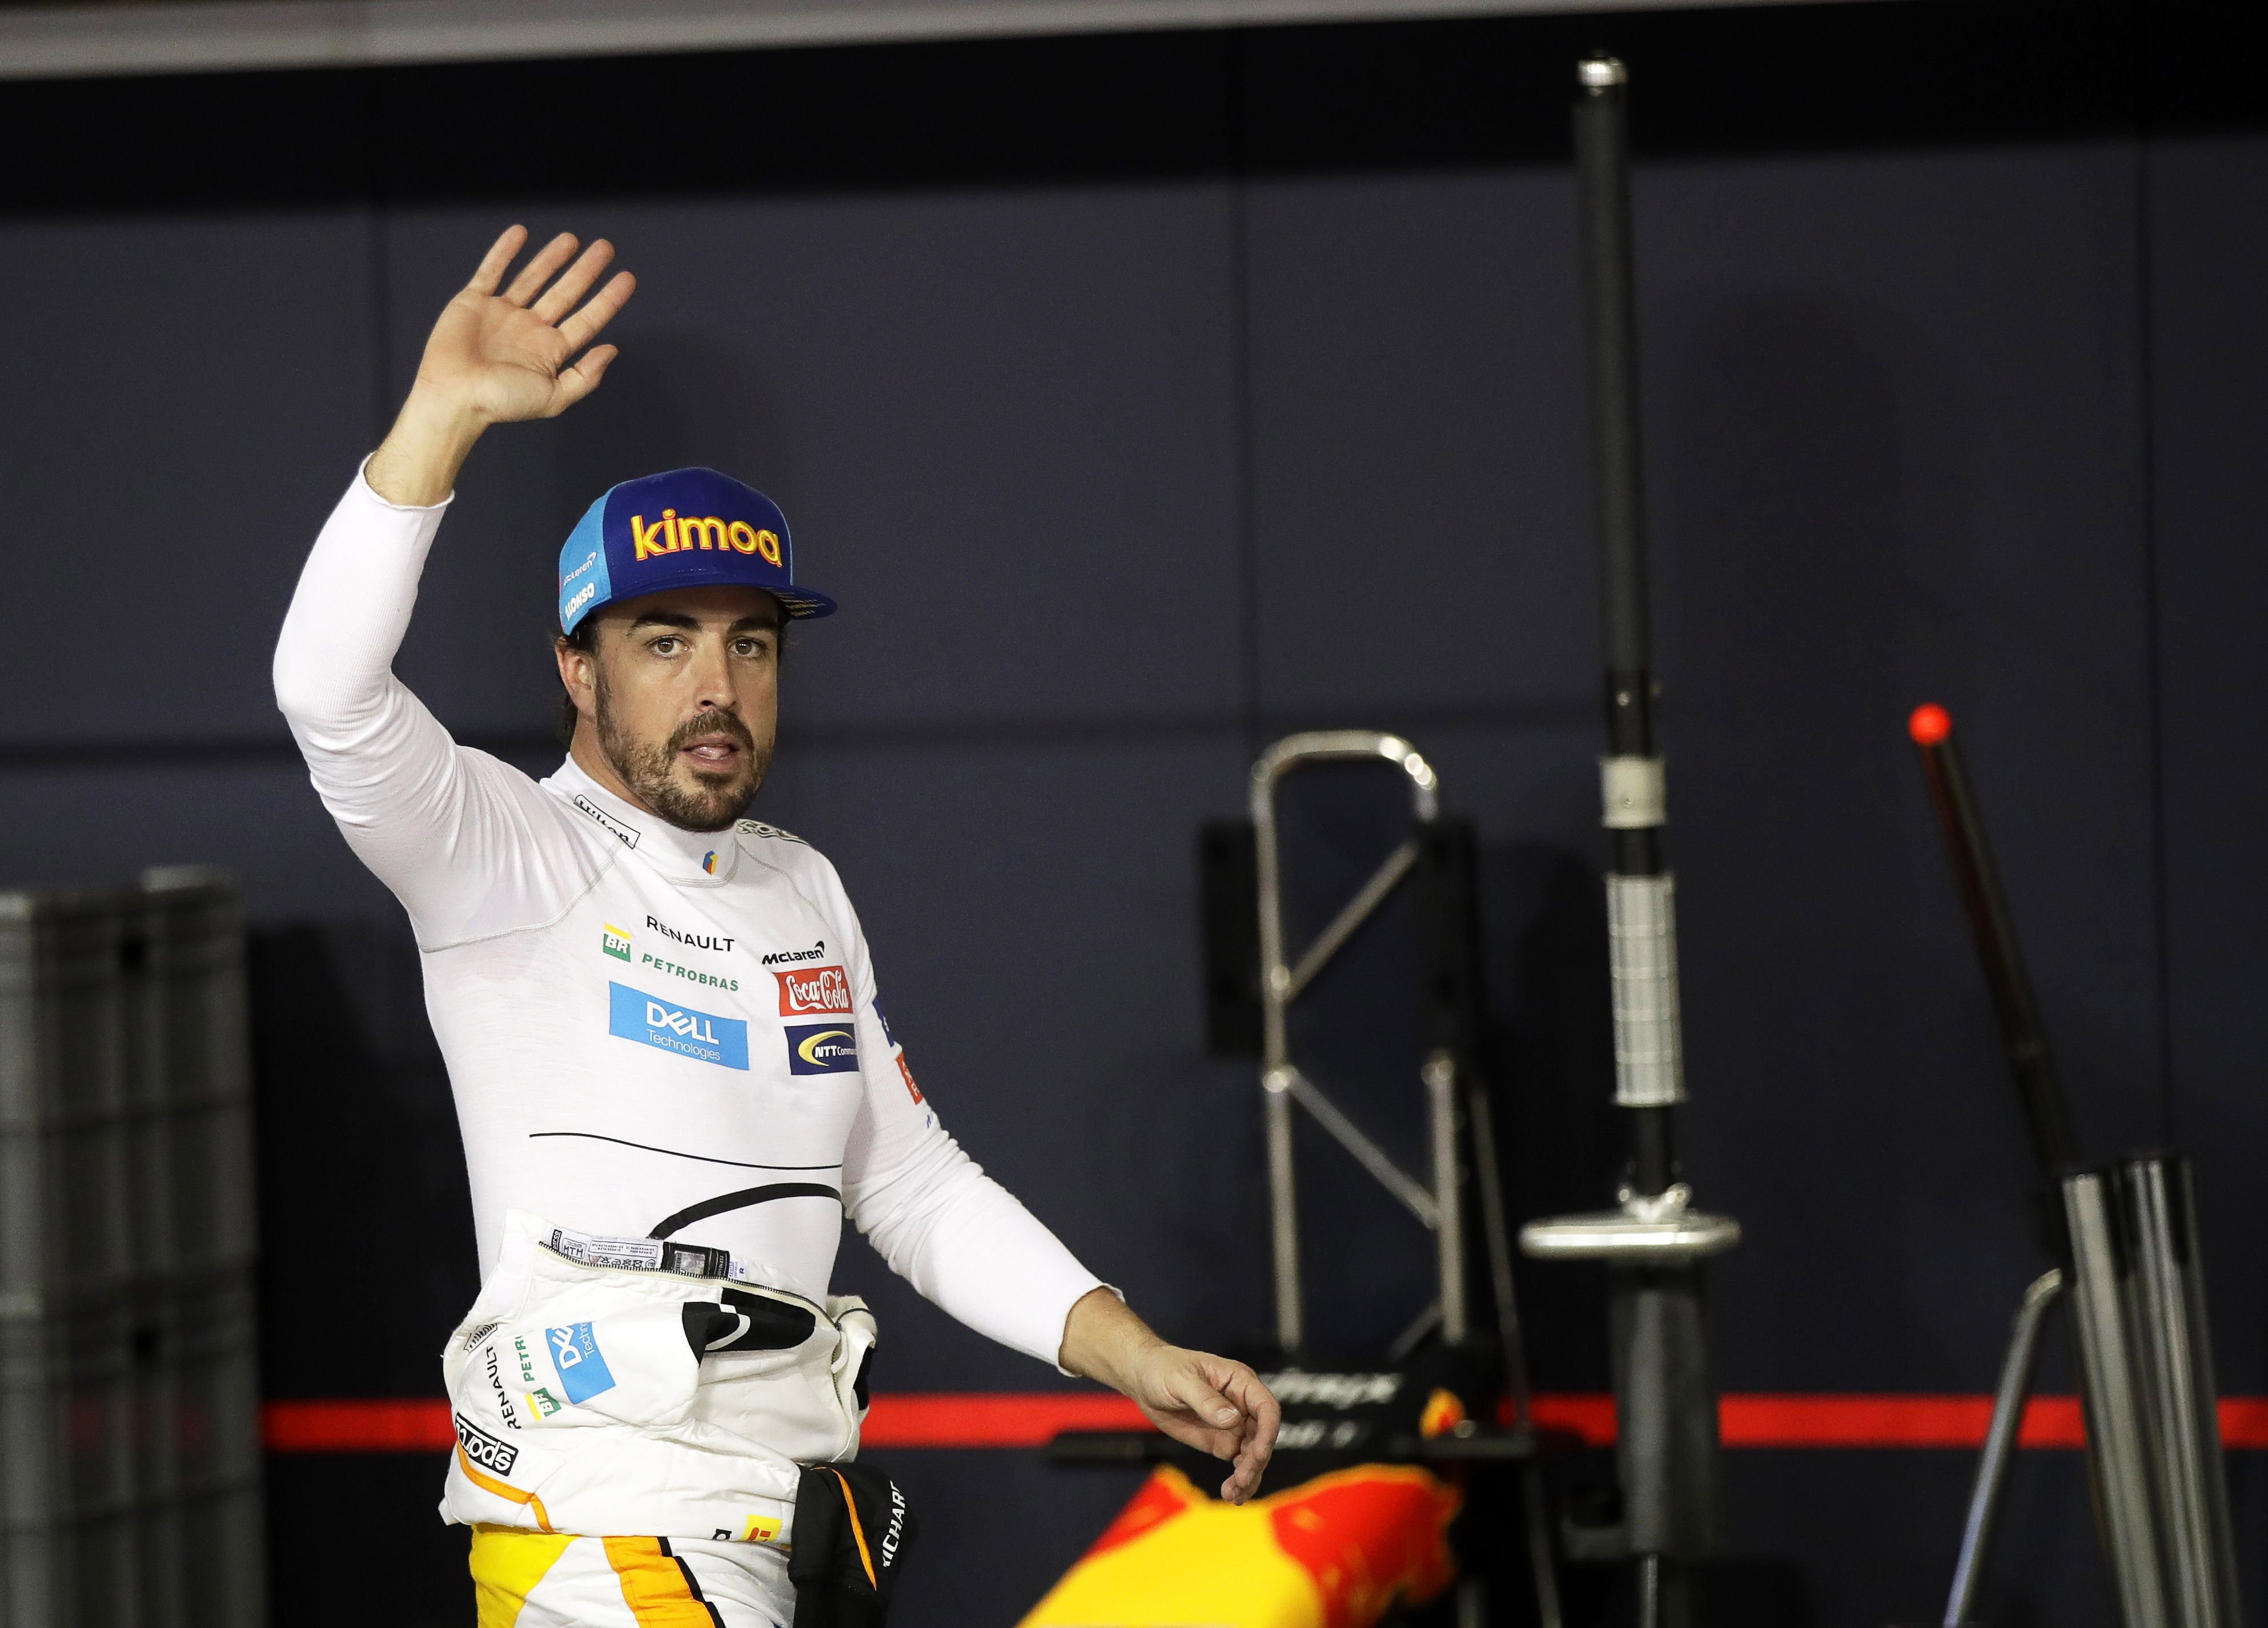 Fernando Alonso dona equips de protecció i mascaretes per guanyar el coronavirus